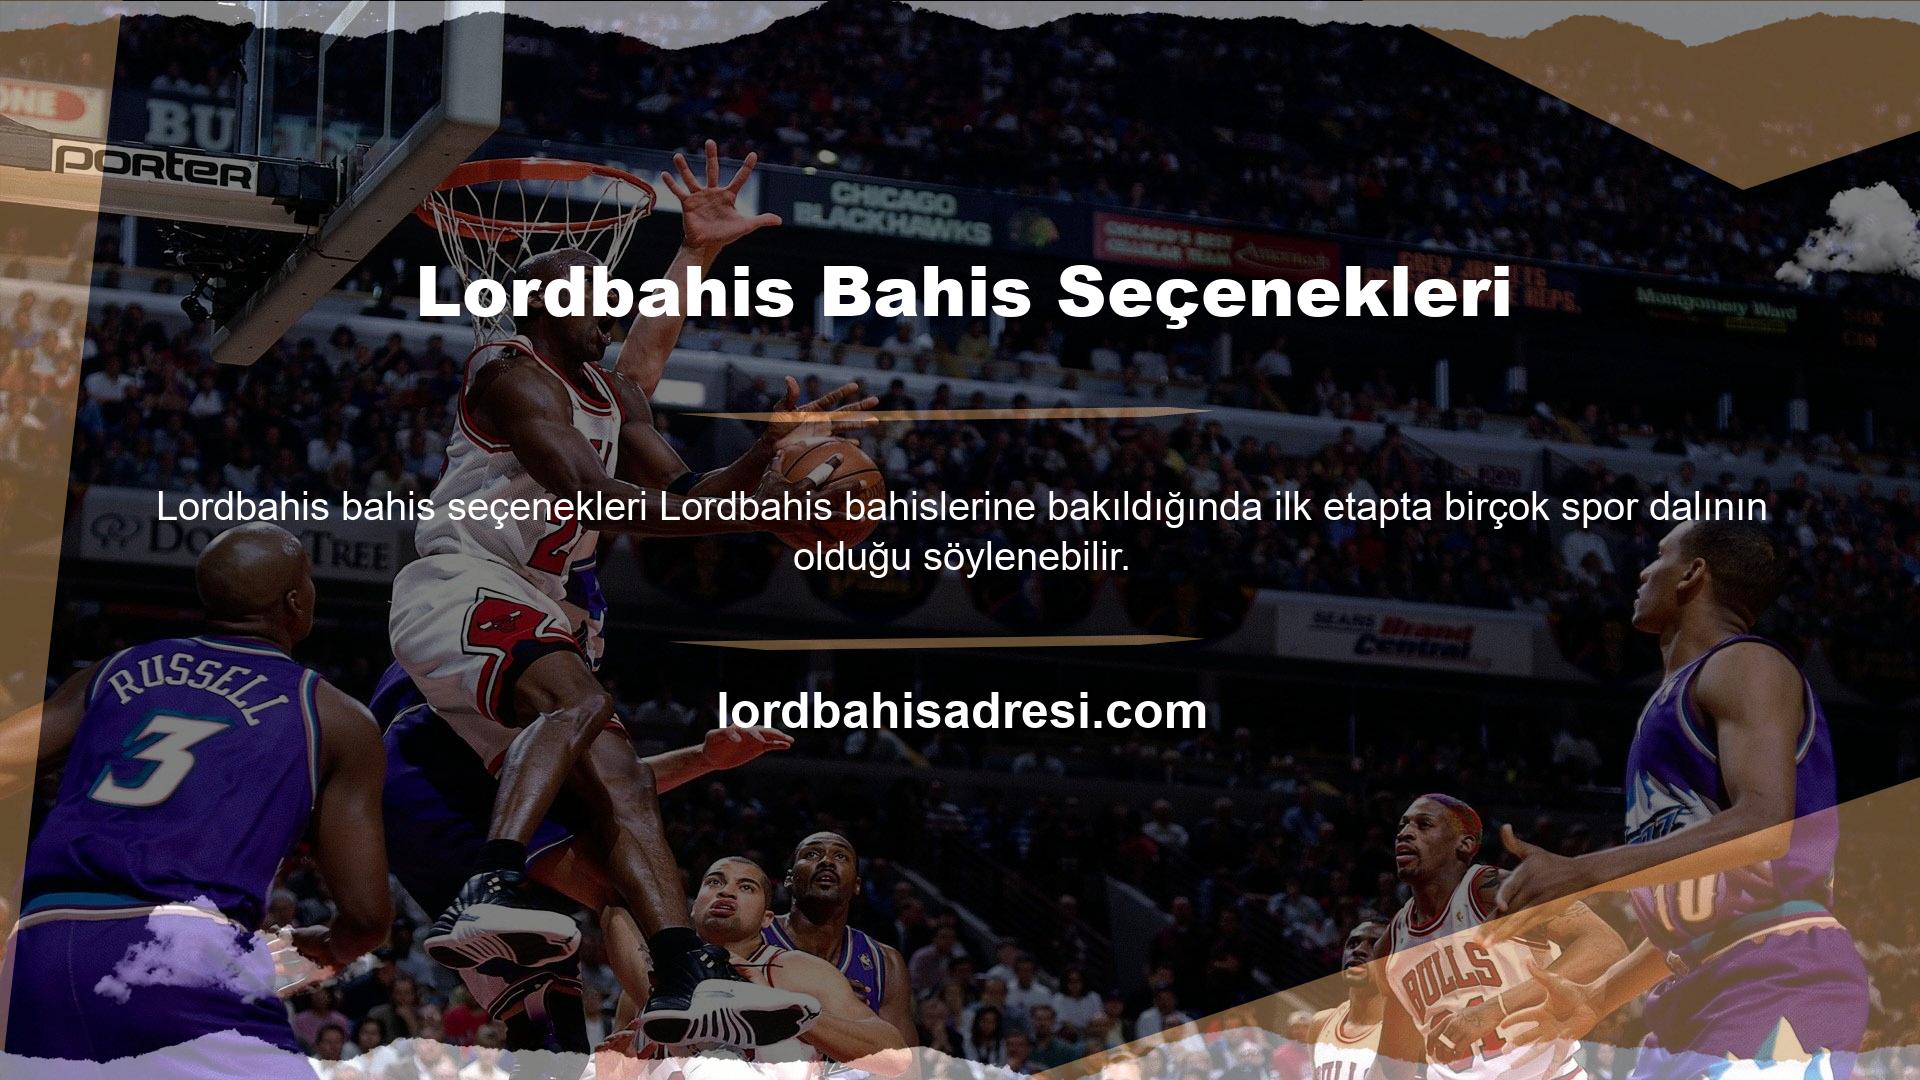 Lordbahis tercih ettiği bahis sitesi futbol, ​​basketbol, ​​voleybol, hentbol, ​​tenis, masa tenisi, ragbi, hokey, buz hokeyi vb